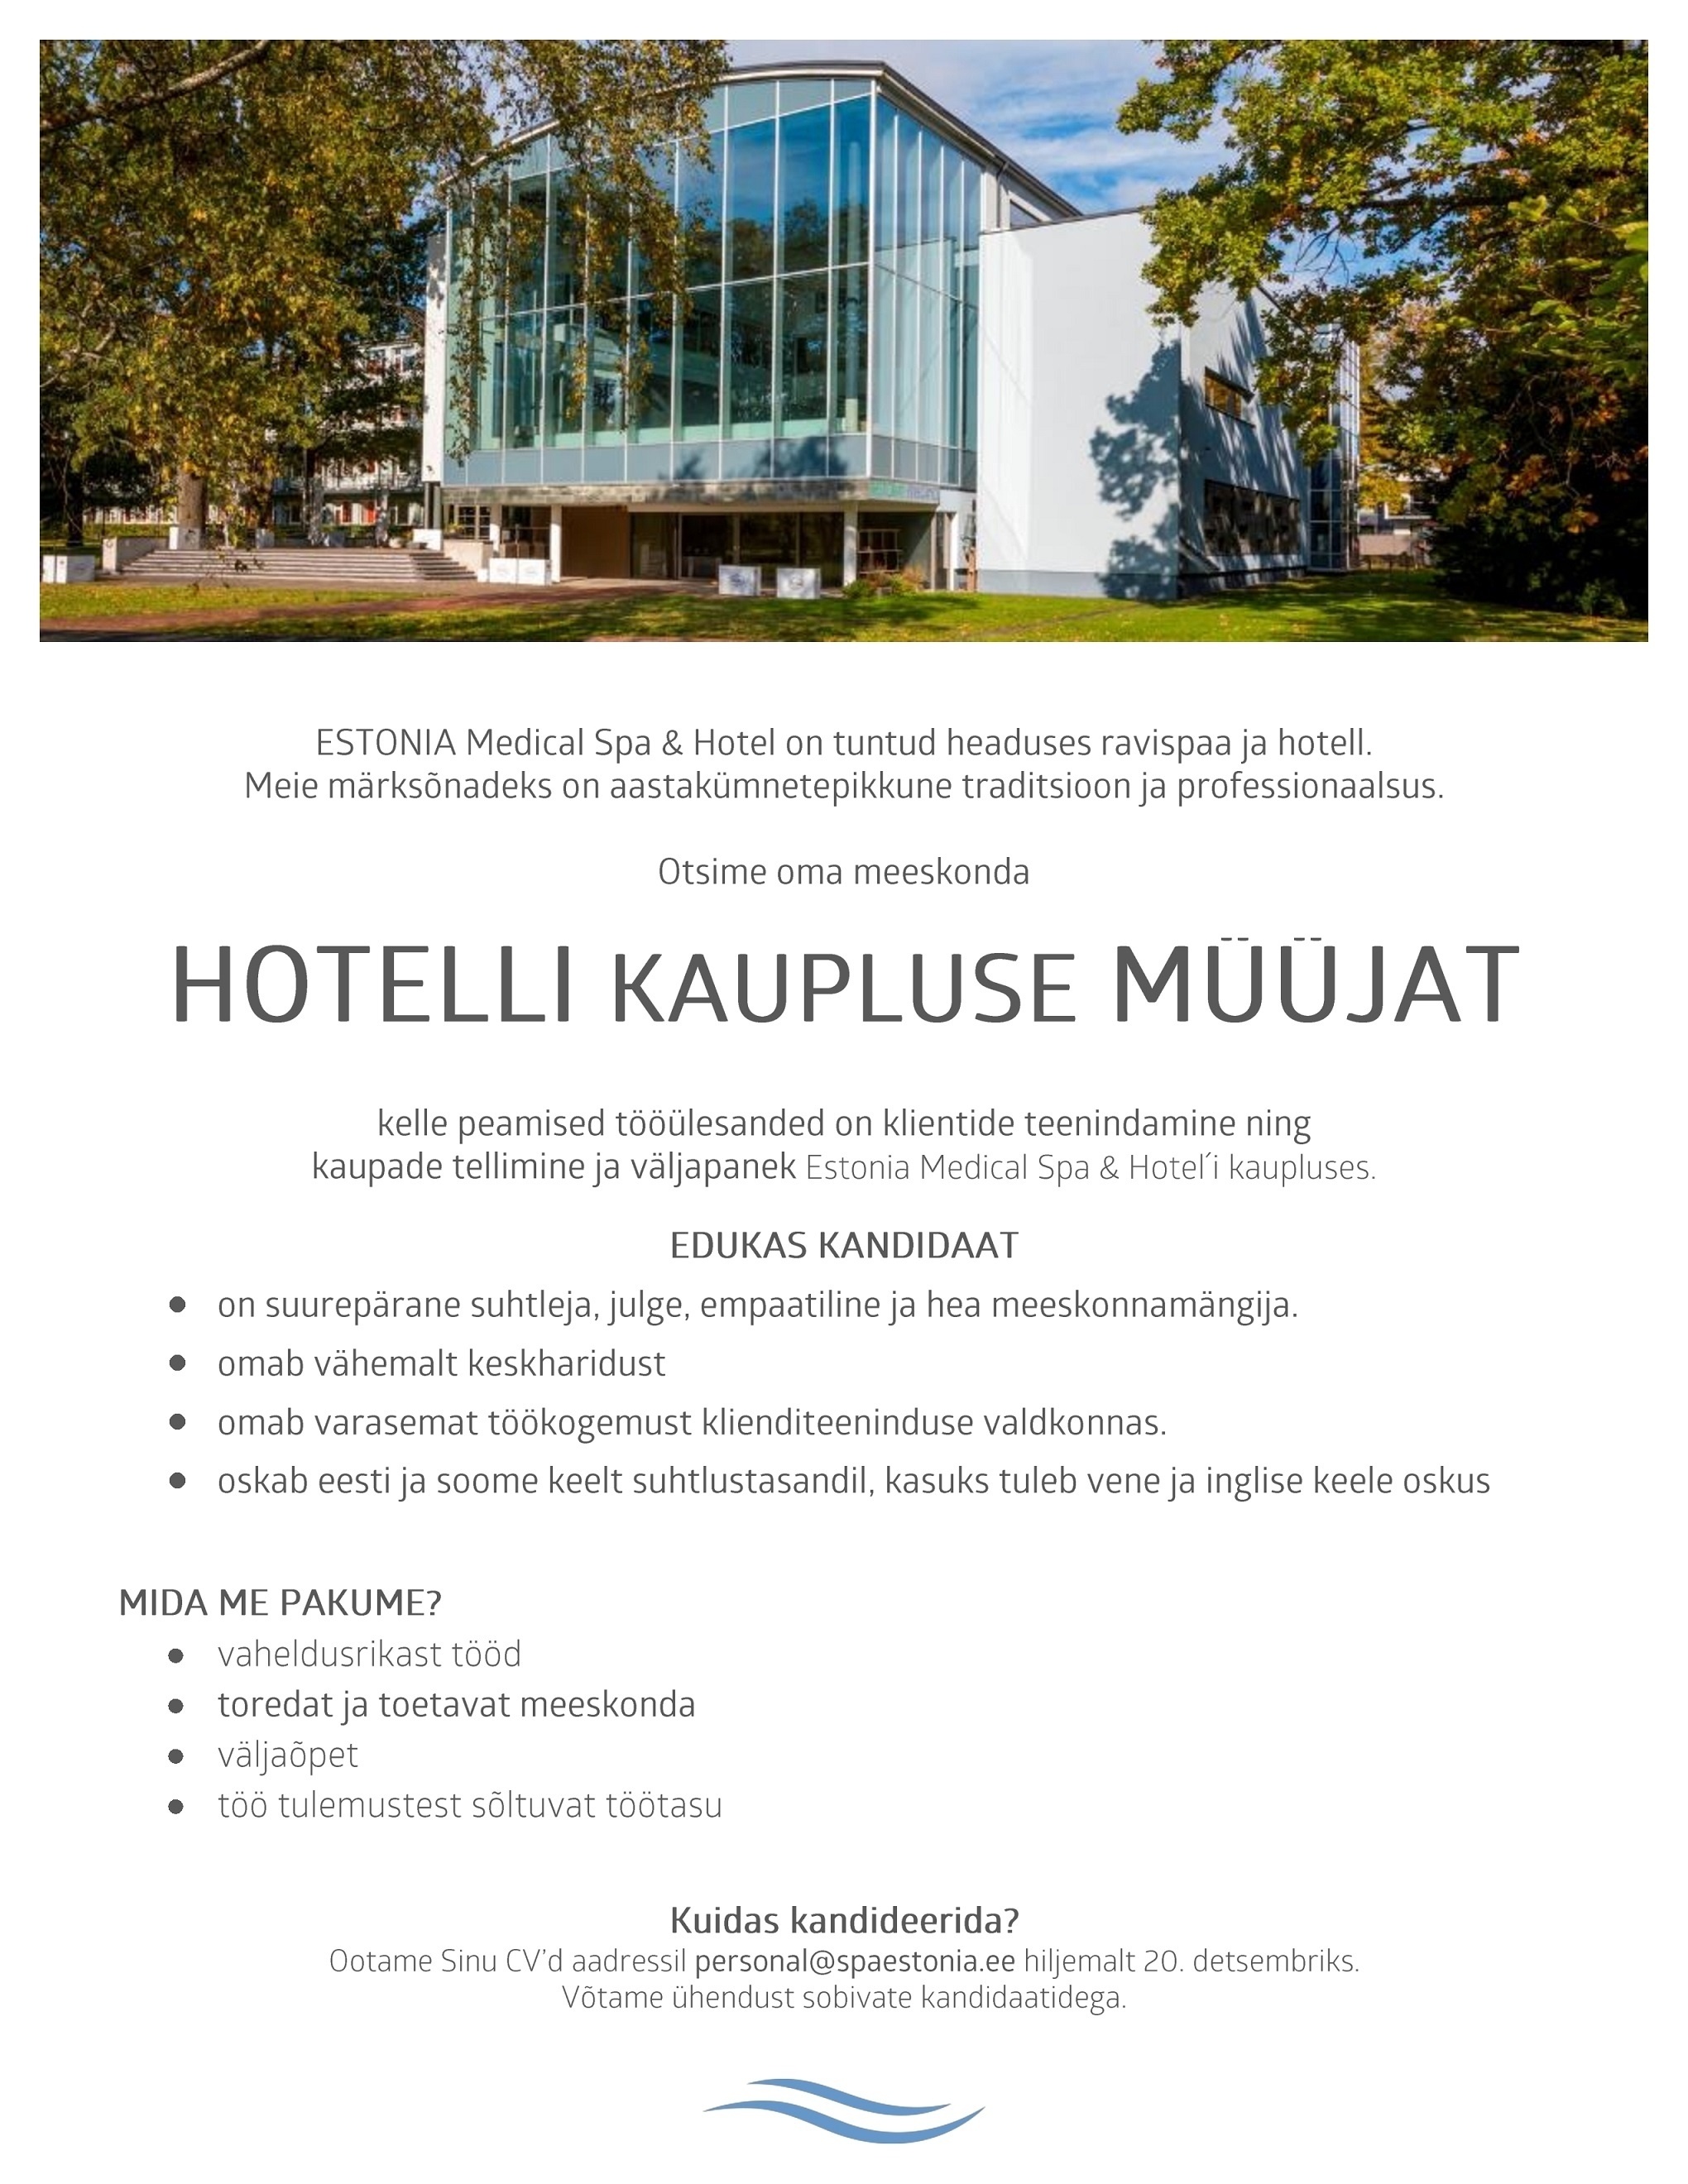 Estonia Spa Hotels AS Müüja Estonia Spa Hotels´i kaupluses